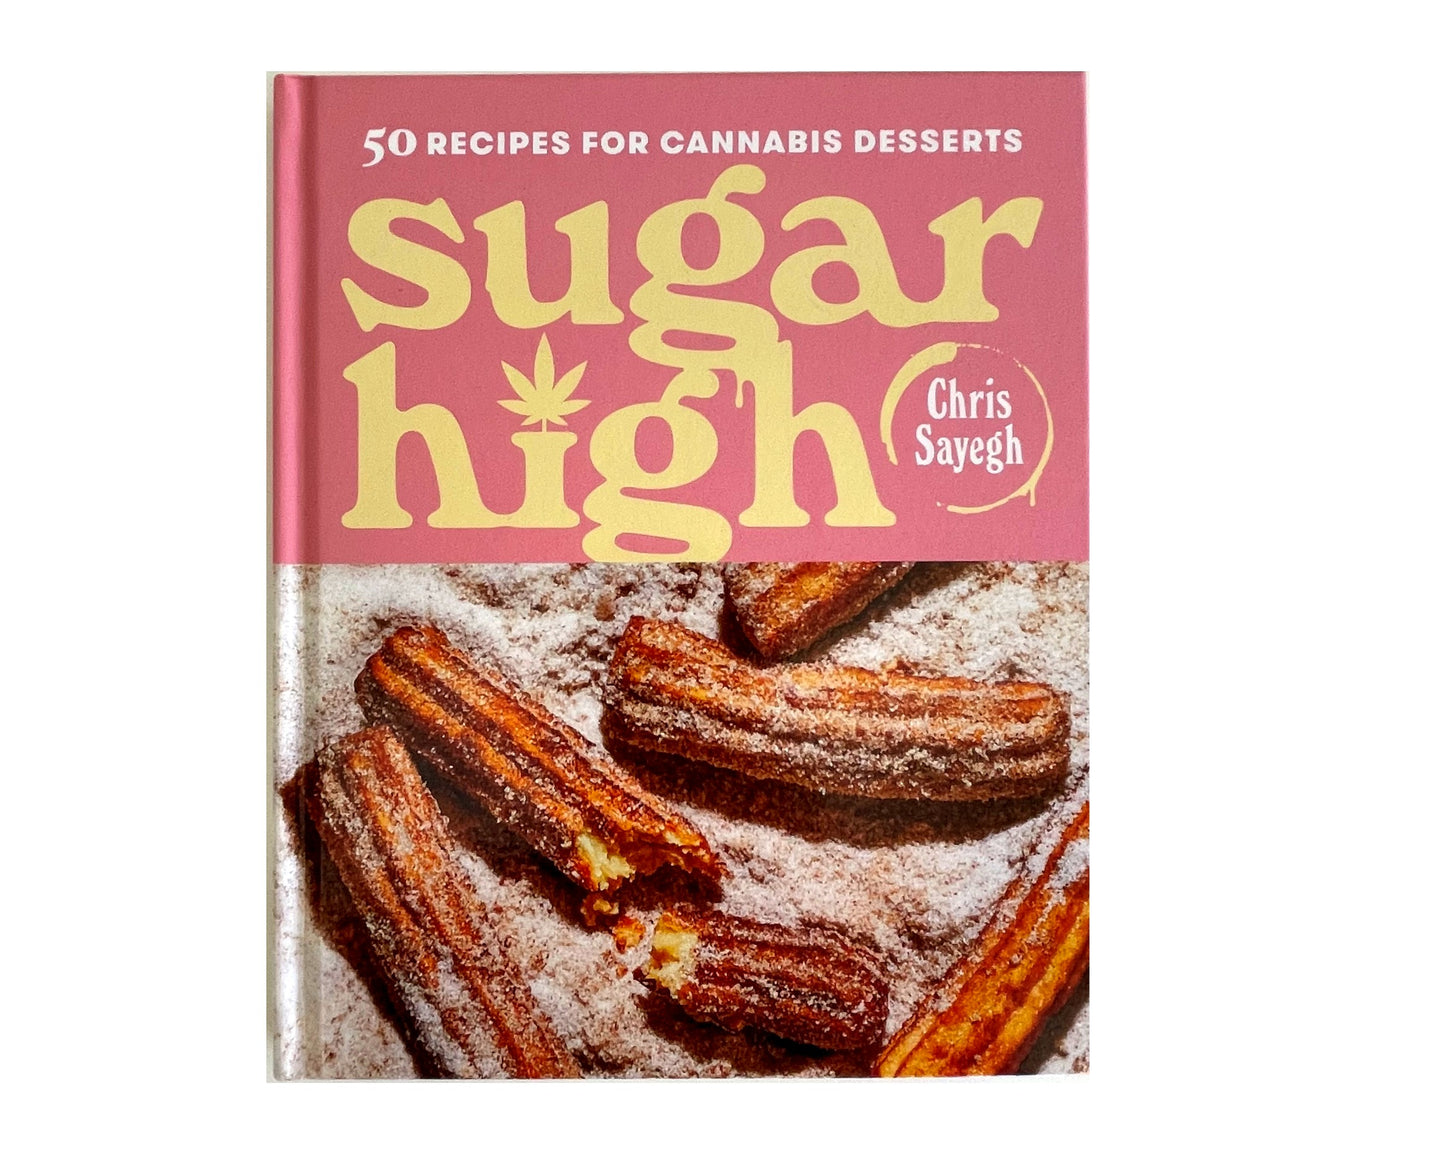 Sugar High by Chris Sayegh